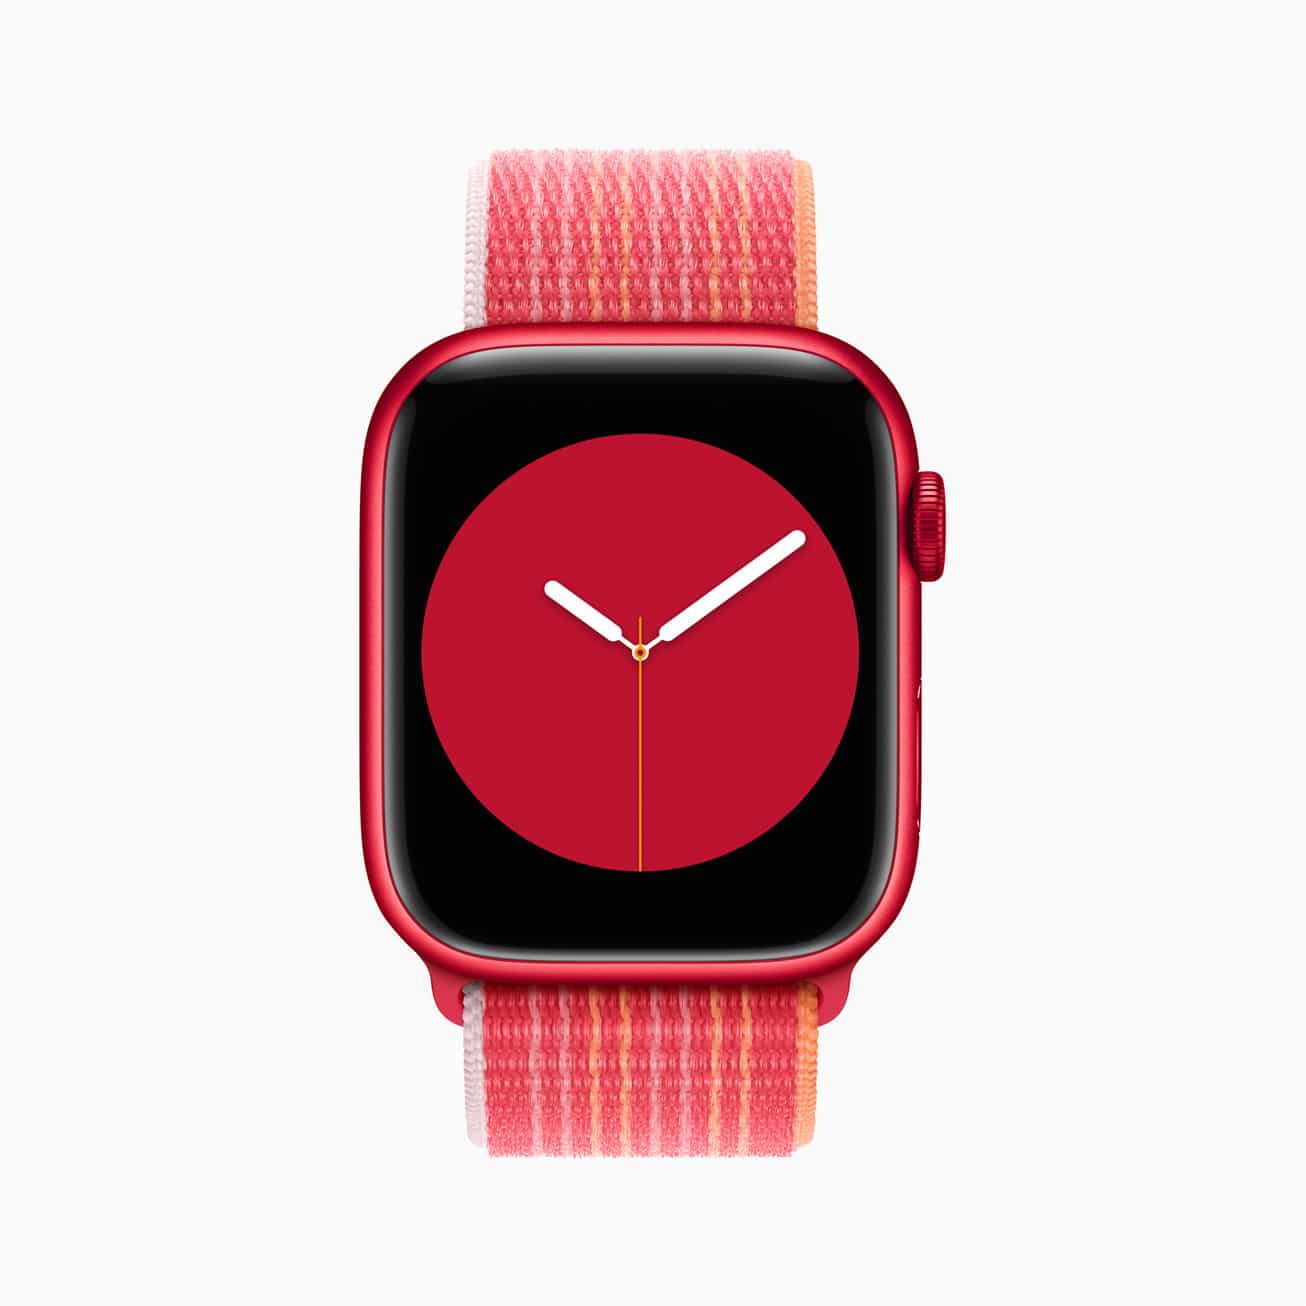 CaiqueCell - Você sabia que o App relógio do seu iPhone marca a hora e o  ponteiro vermelho se mexe? #caiquecell #iphonerj #apple